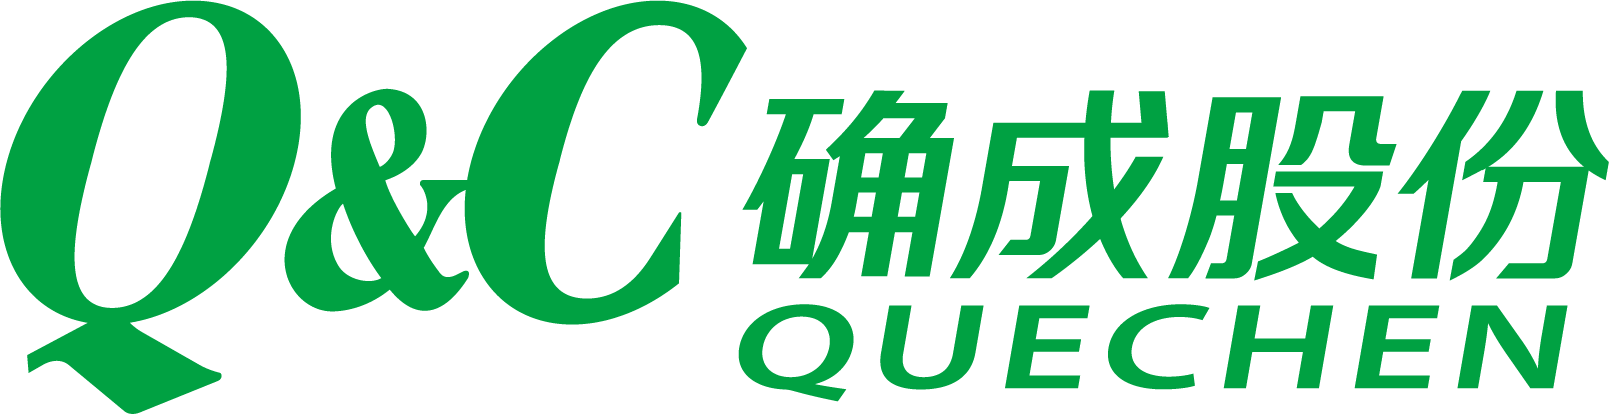 Quechen Silicon Chemical Co., Ltd.